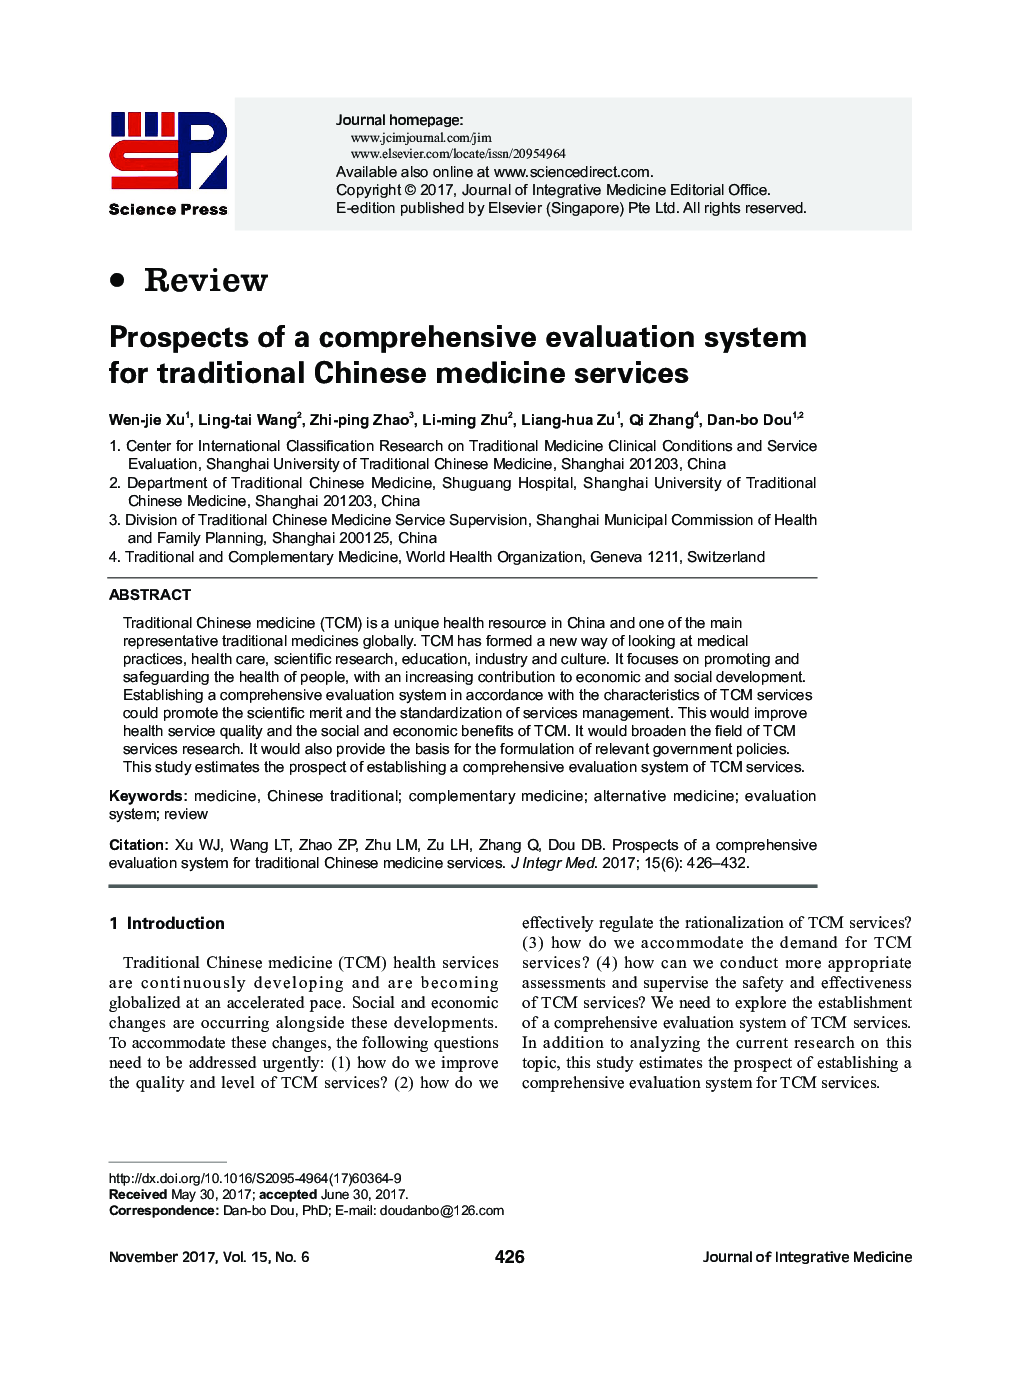 چشم انداز یک سیستم ارزیابی جامع برای خدمات طب سنتی چینی 